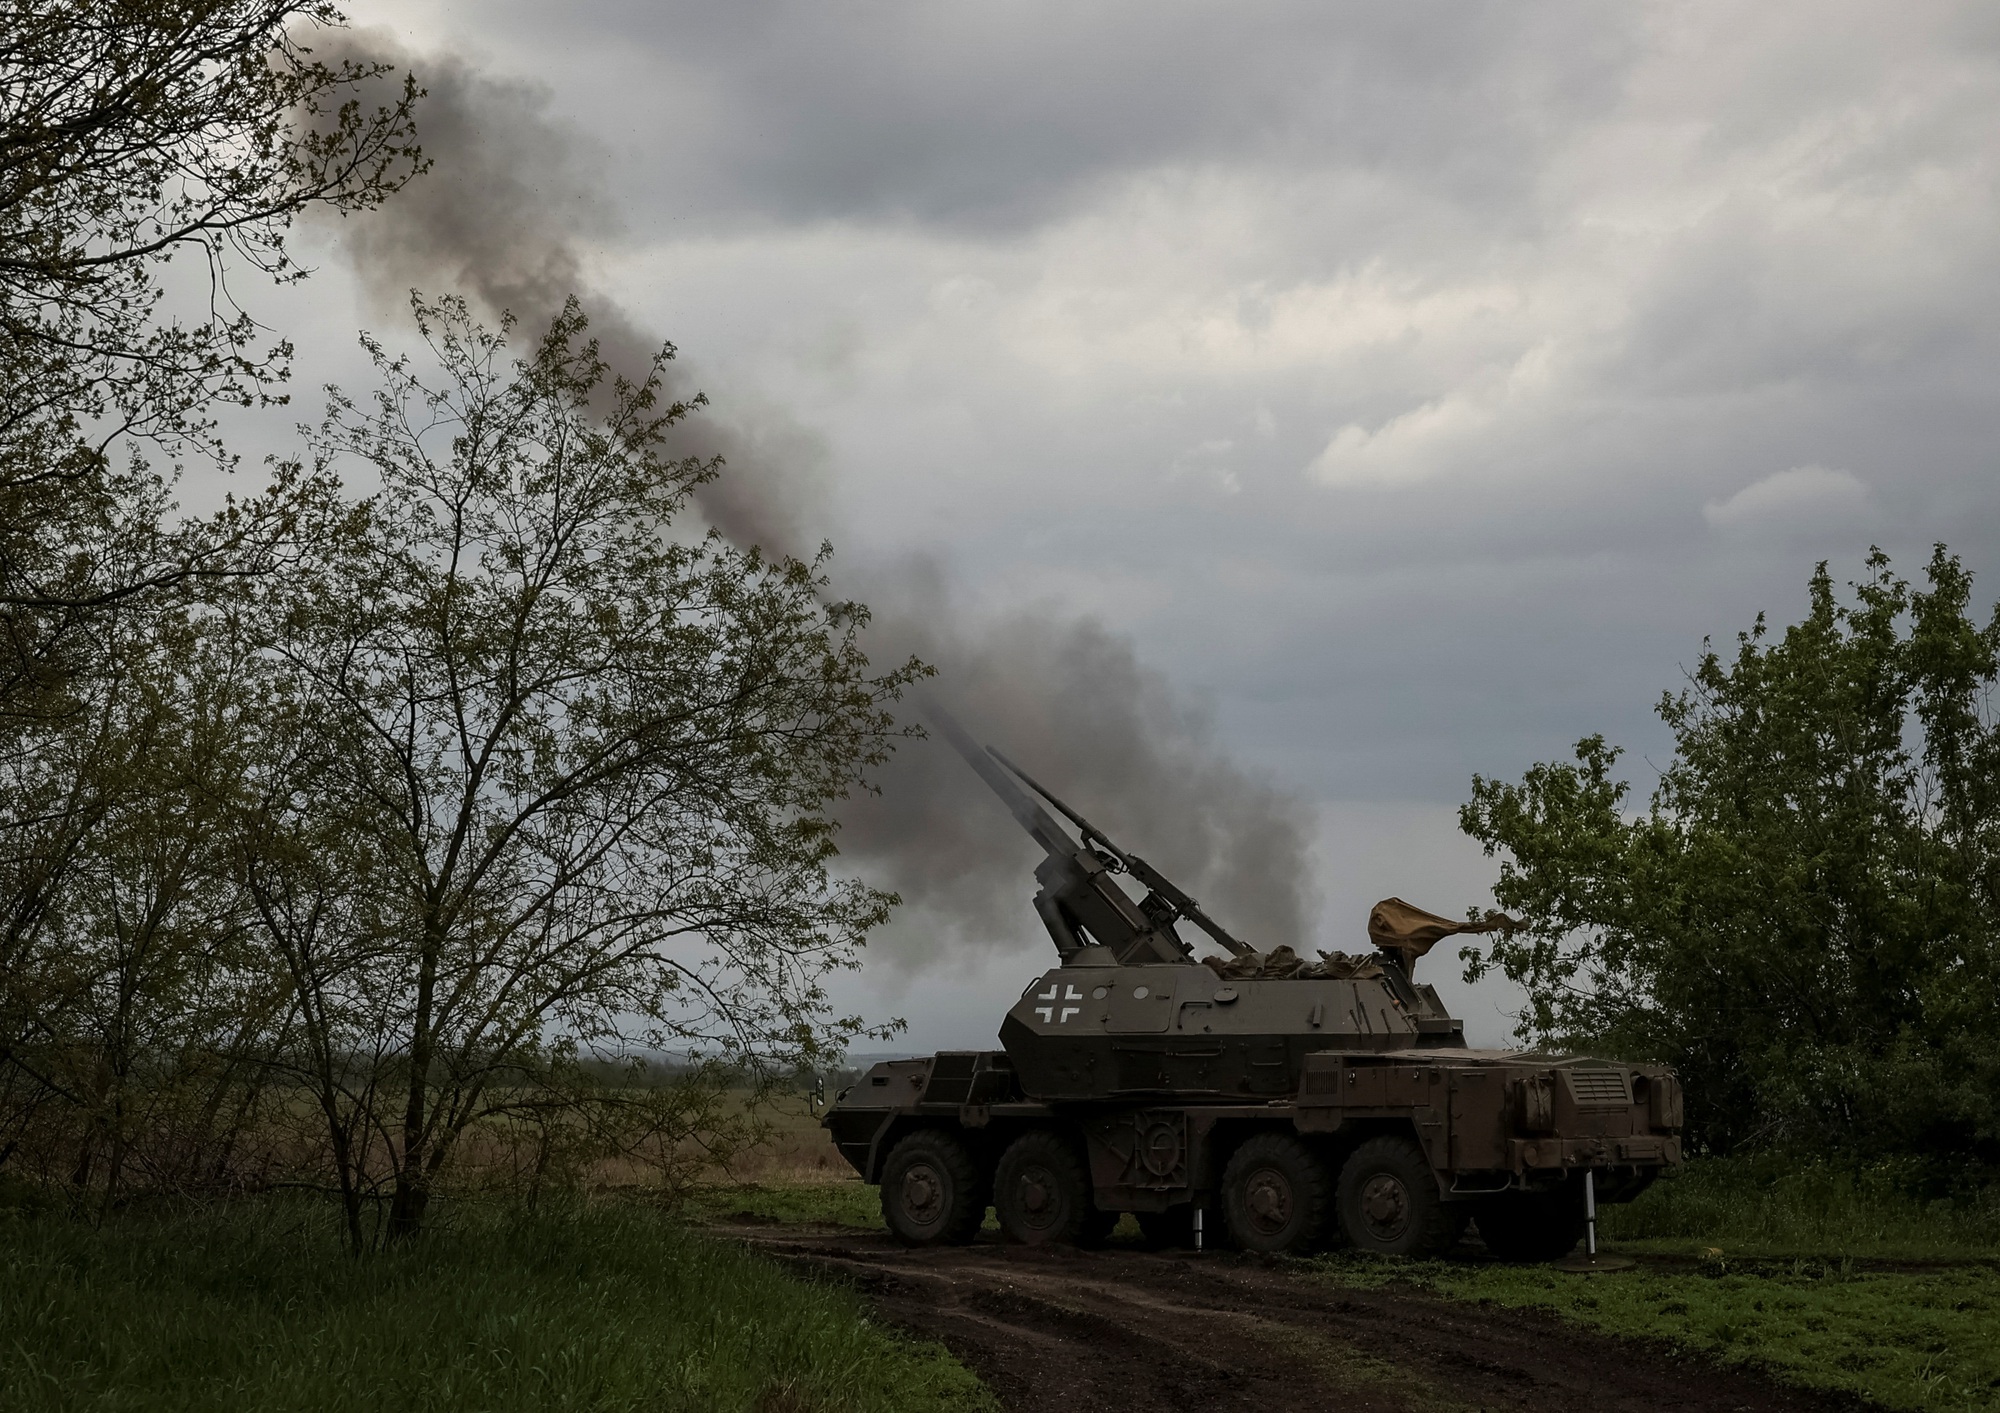 Tướng Đức: điều kiện không thuận lợi cho cuộc phản công của Ukraine - Ảnh 1.